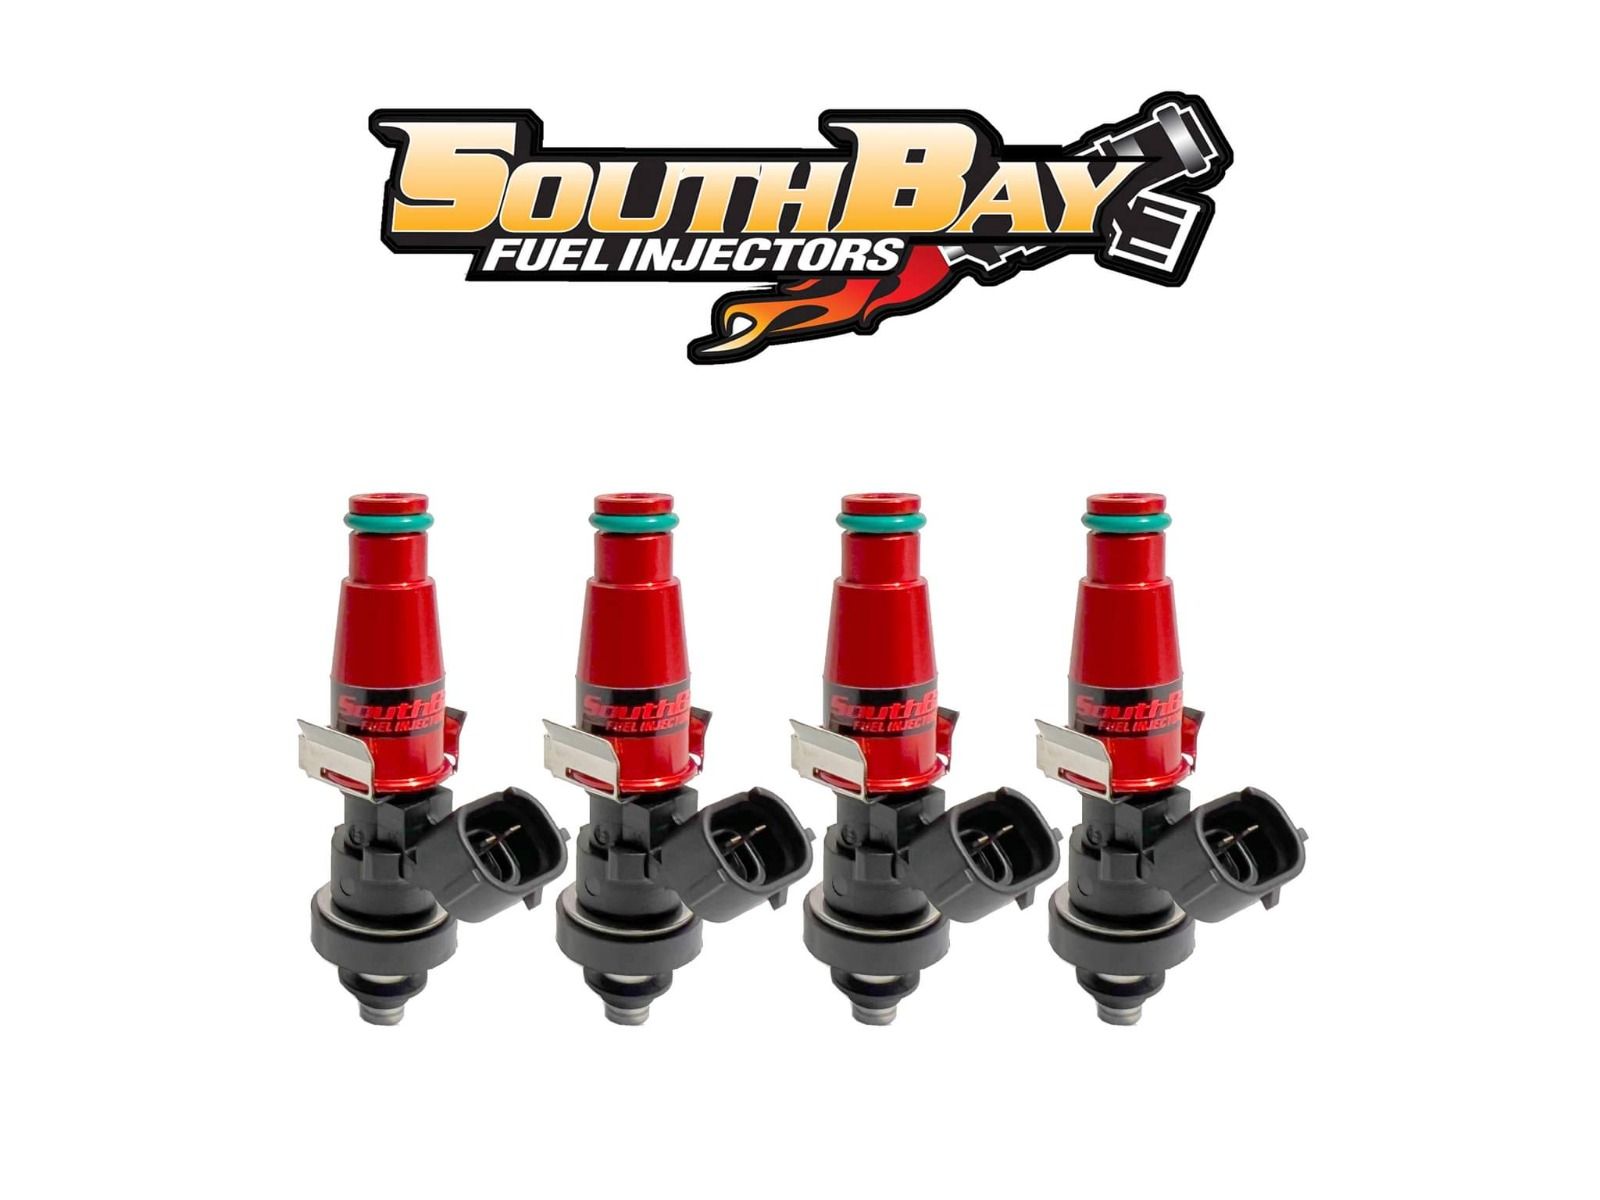 South Bay Fuel Injectors 2600CC - Premium  from Precision1parts.com - Just $1210! Shop now at Precision1parts.com